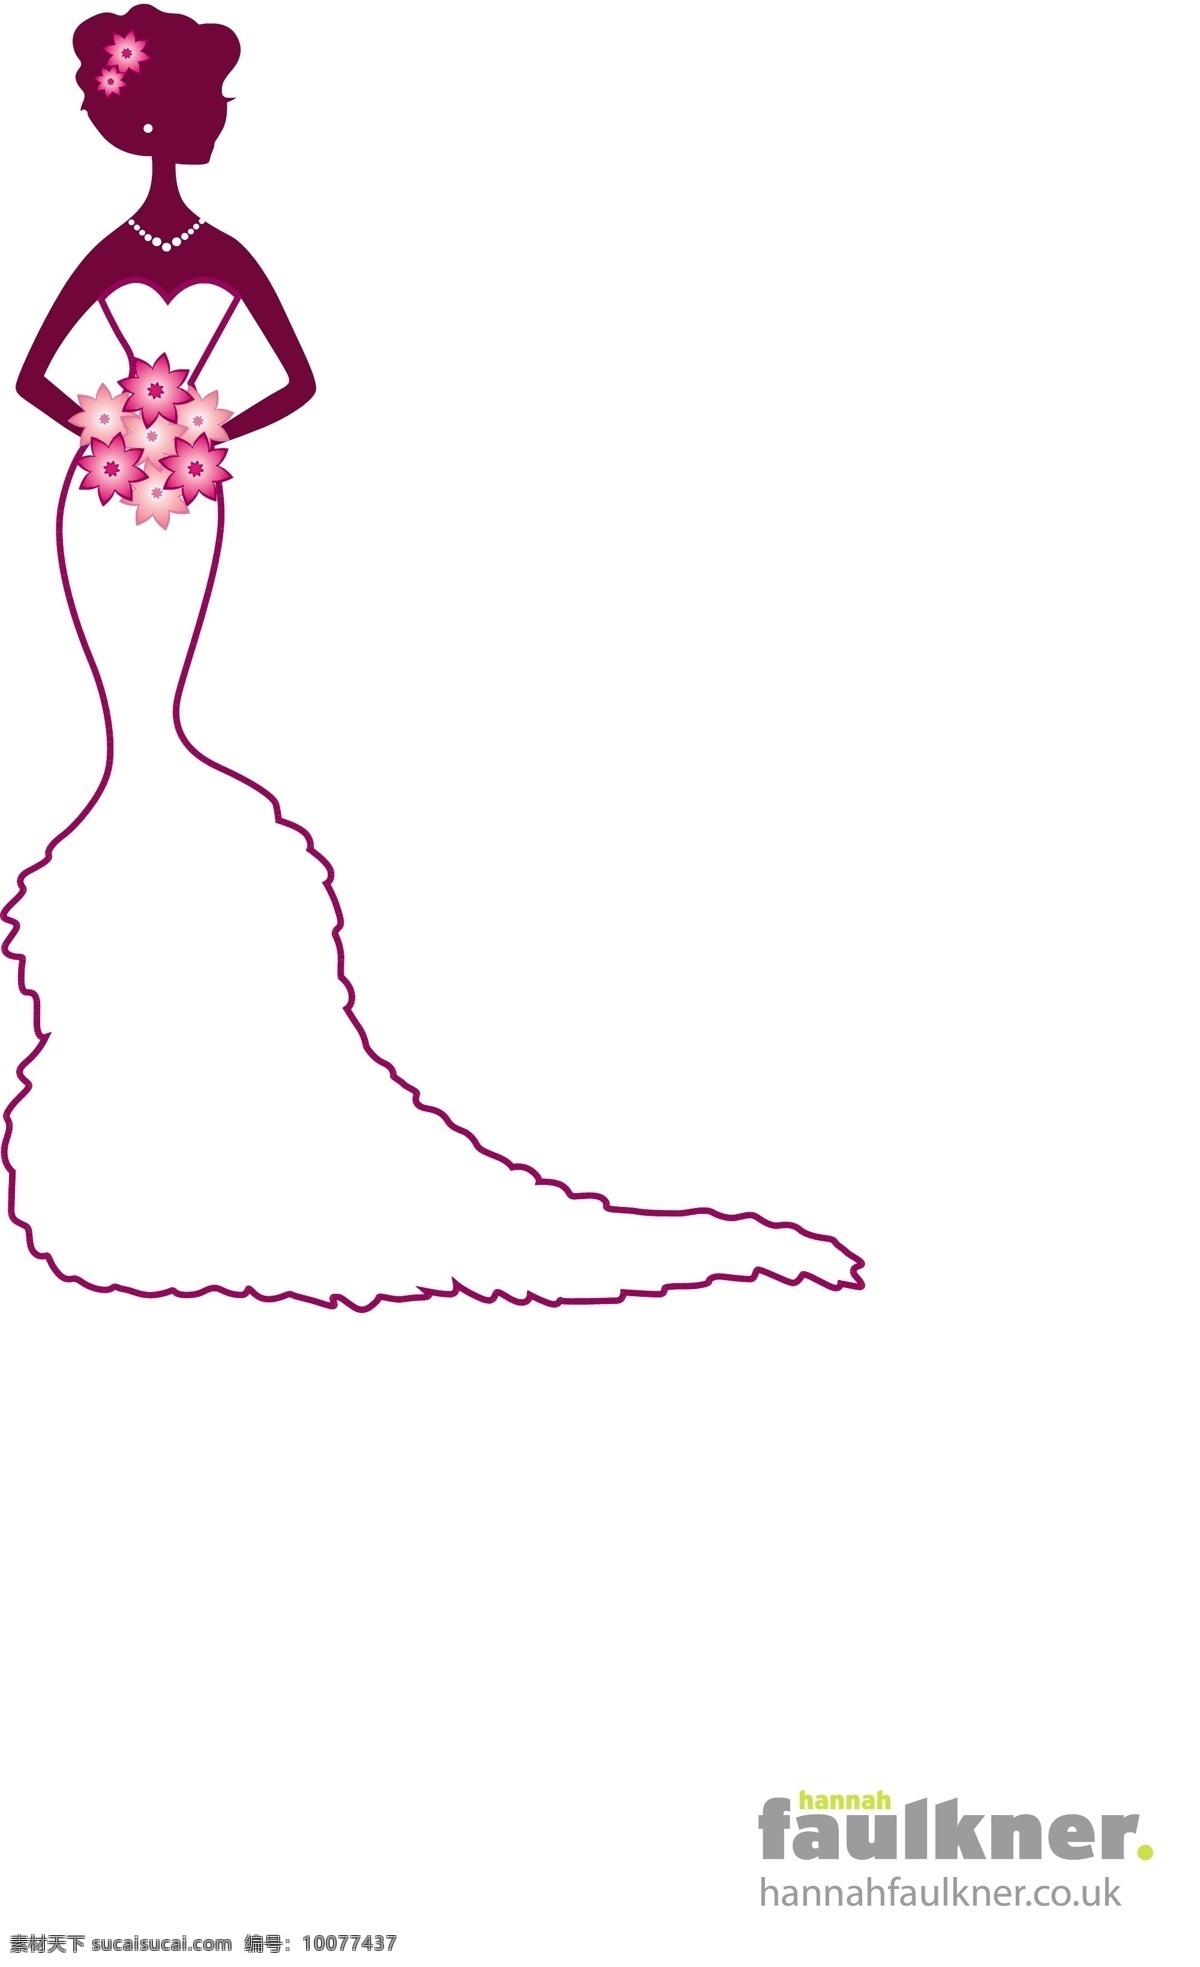 女性免费下载 广告素材 花朵 婚礼 婚纱 结婚 美女 女孩 女性 矢量素材 矢量图 矢量人物